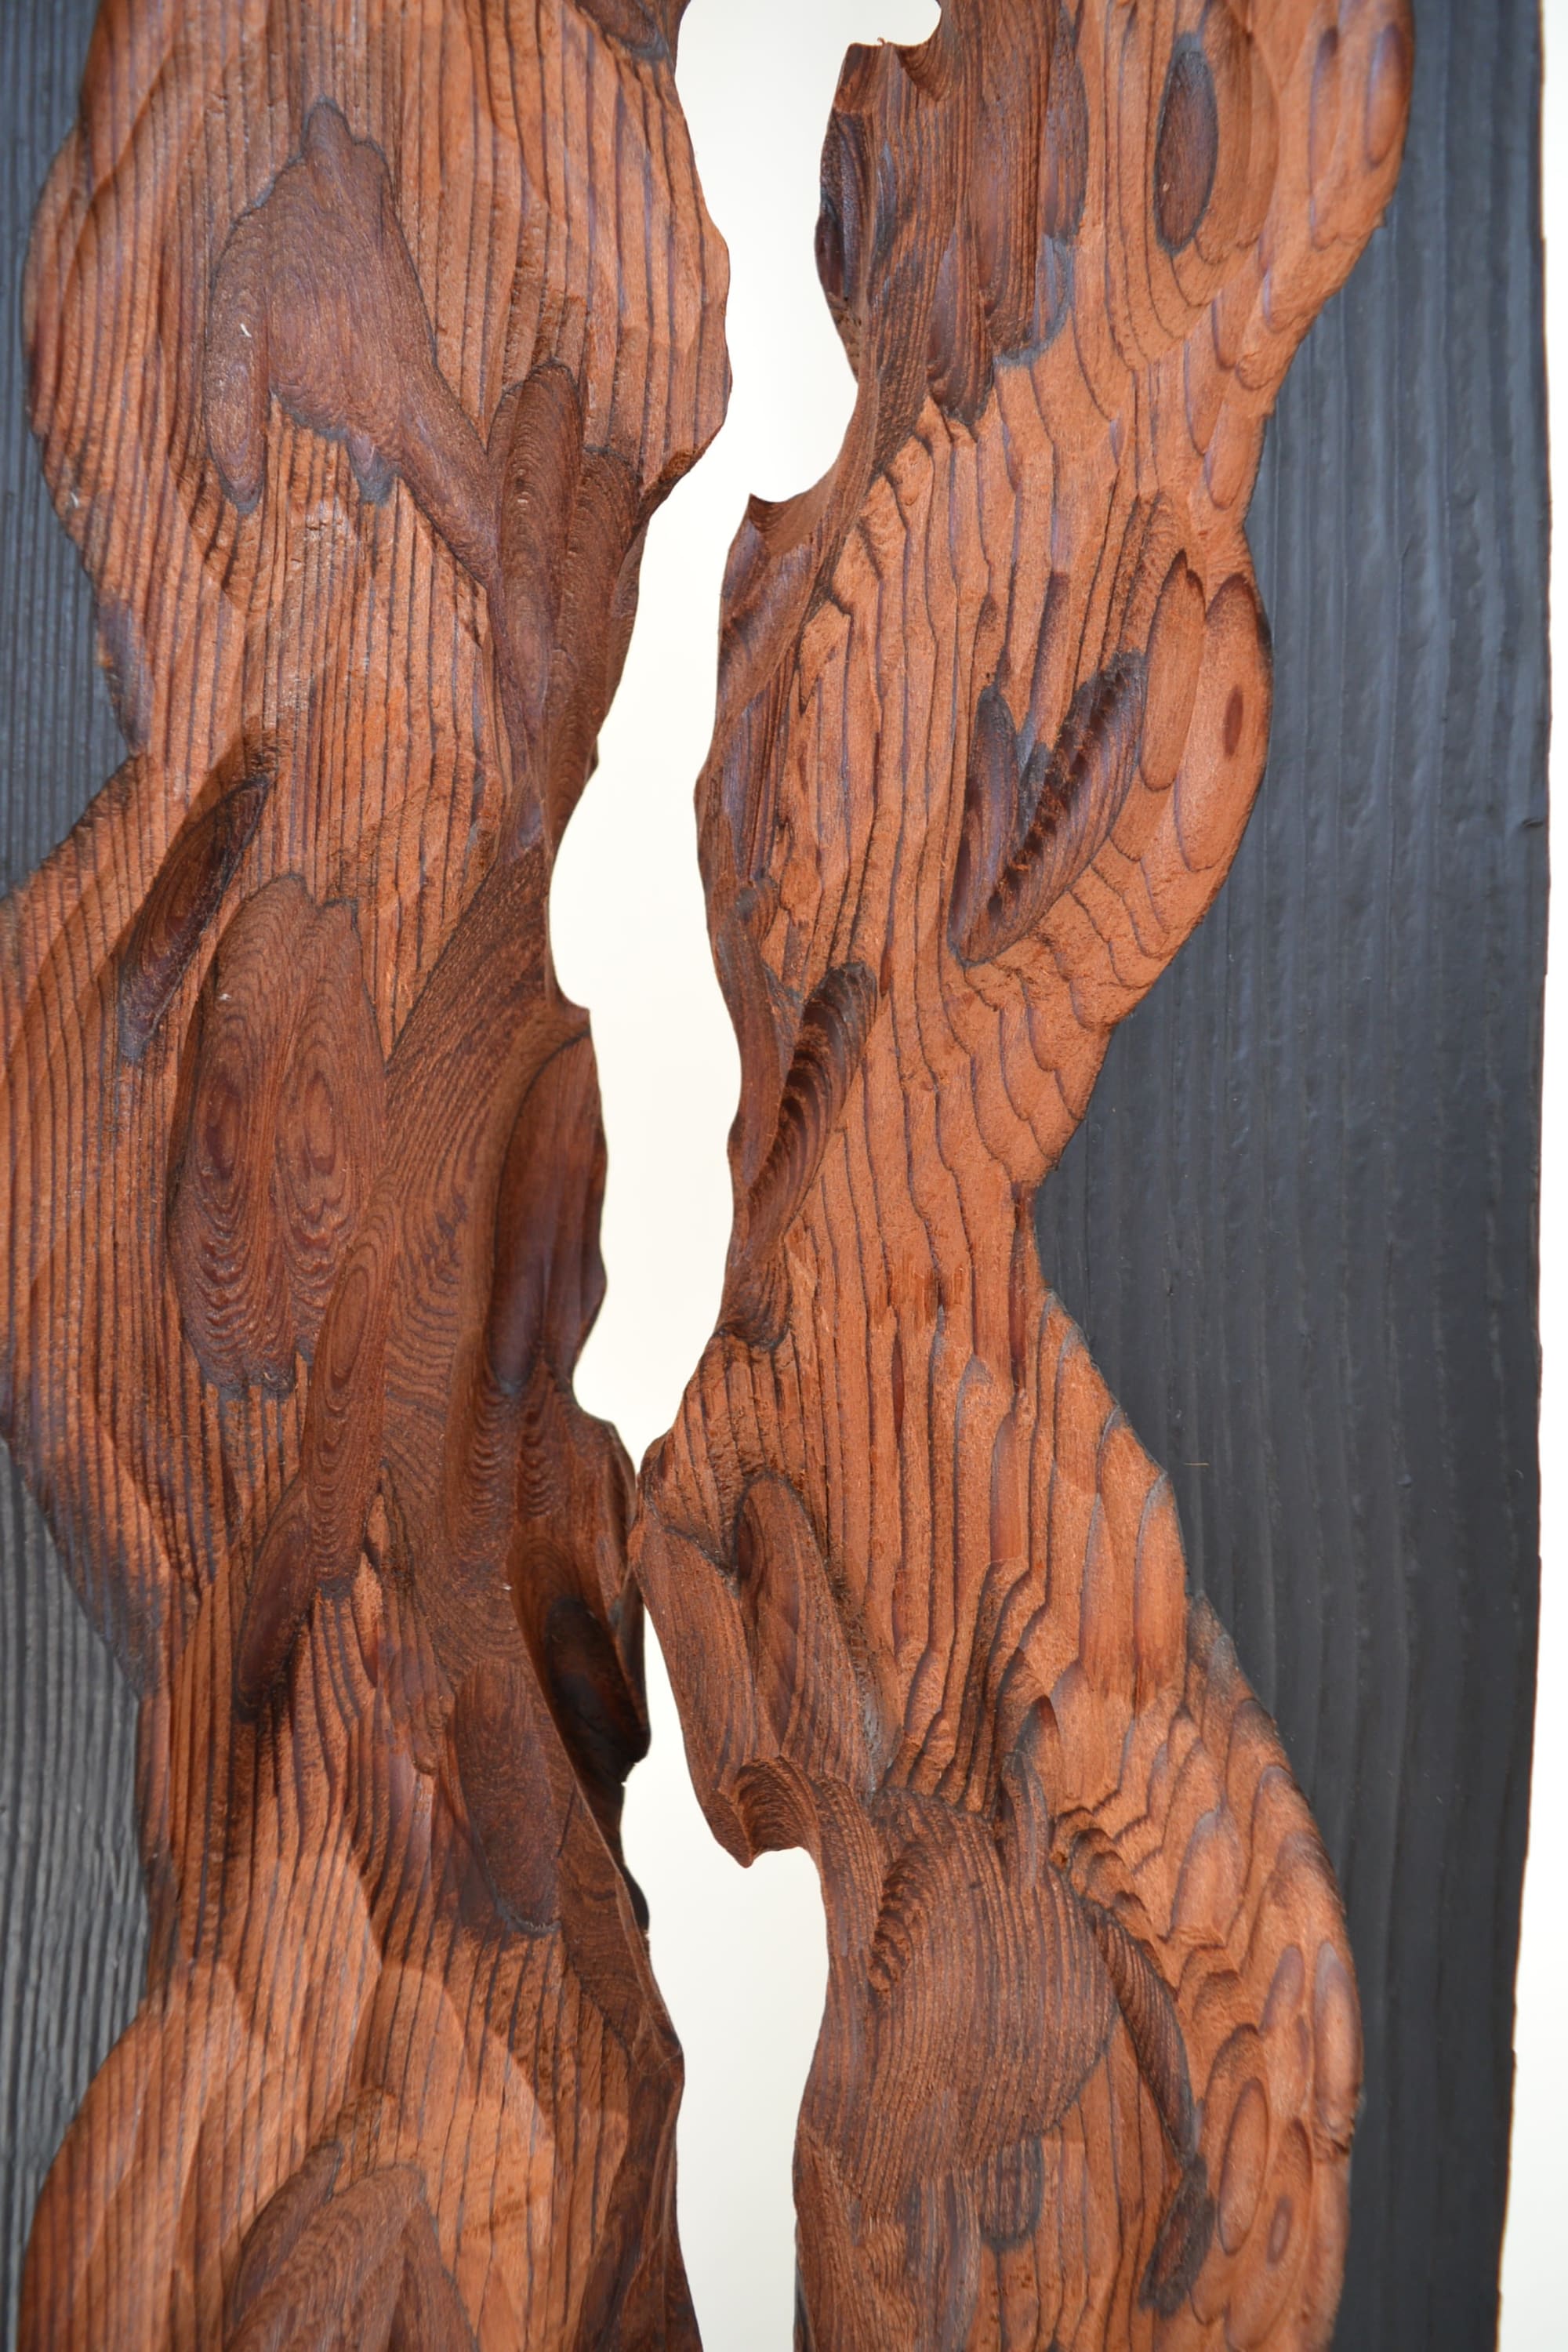 Abstract Wood Art, Wood Wall Art, Wood Sculpture, Modern Art by